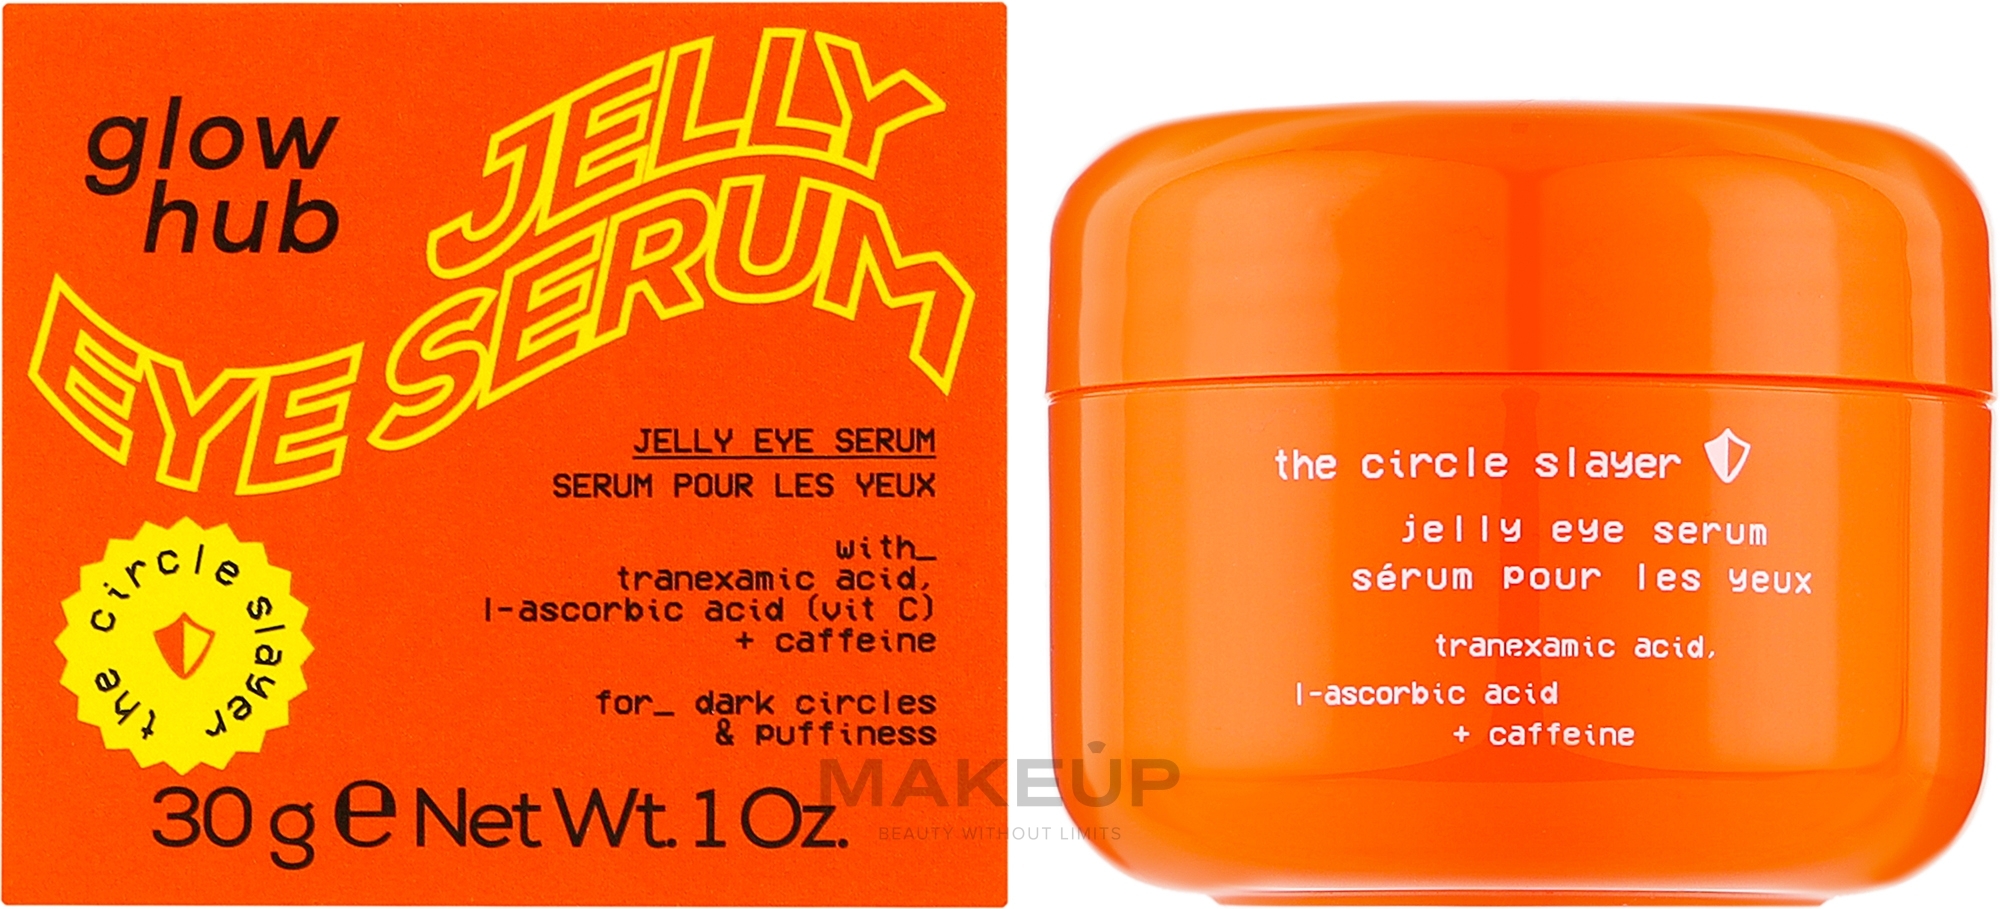 Освітлюючий гель навколо очей з вітаміном С - Glow Hub The Circle  Slayer Jelly Eye Cream  — фото 30g